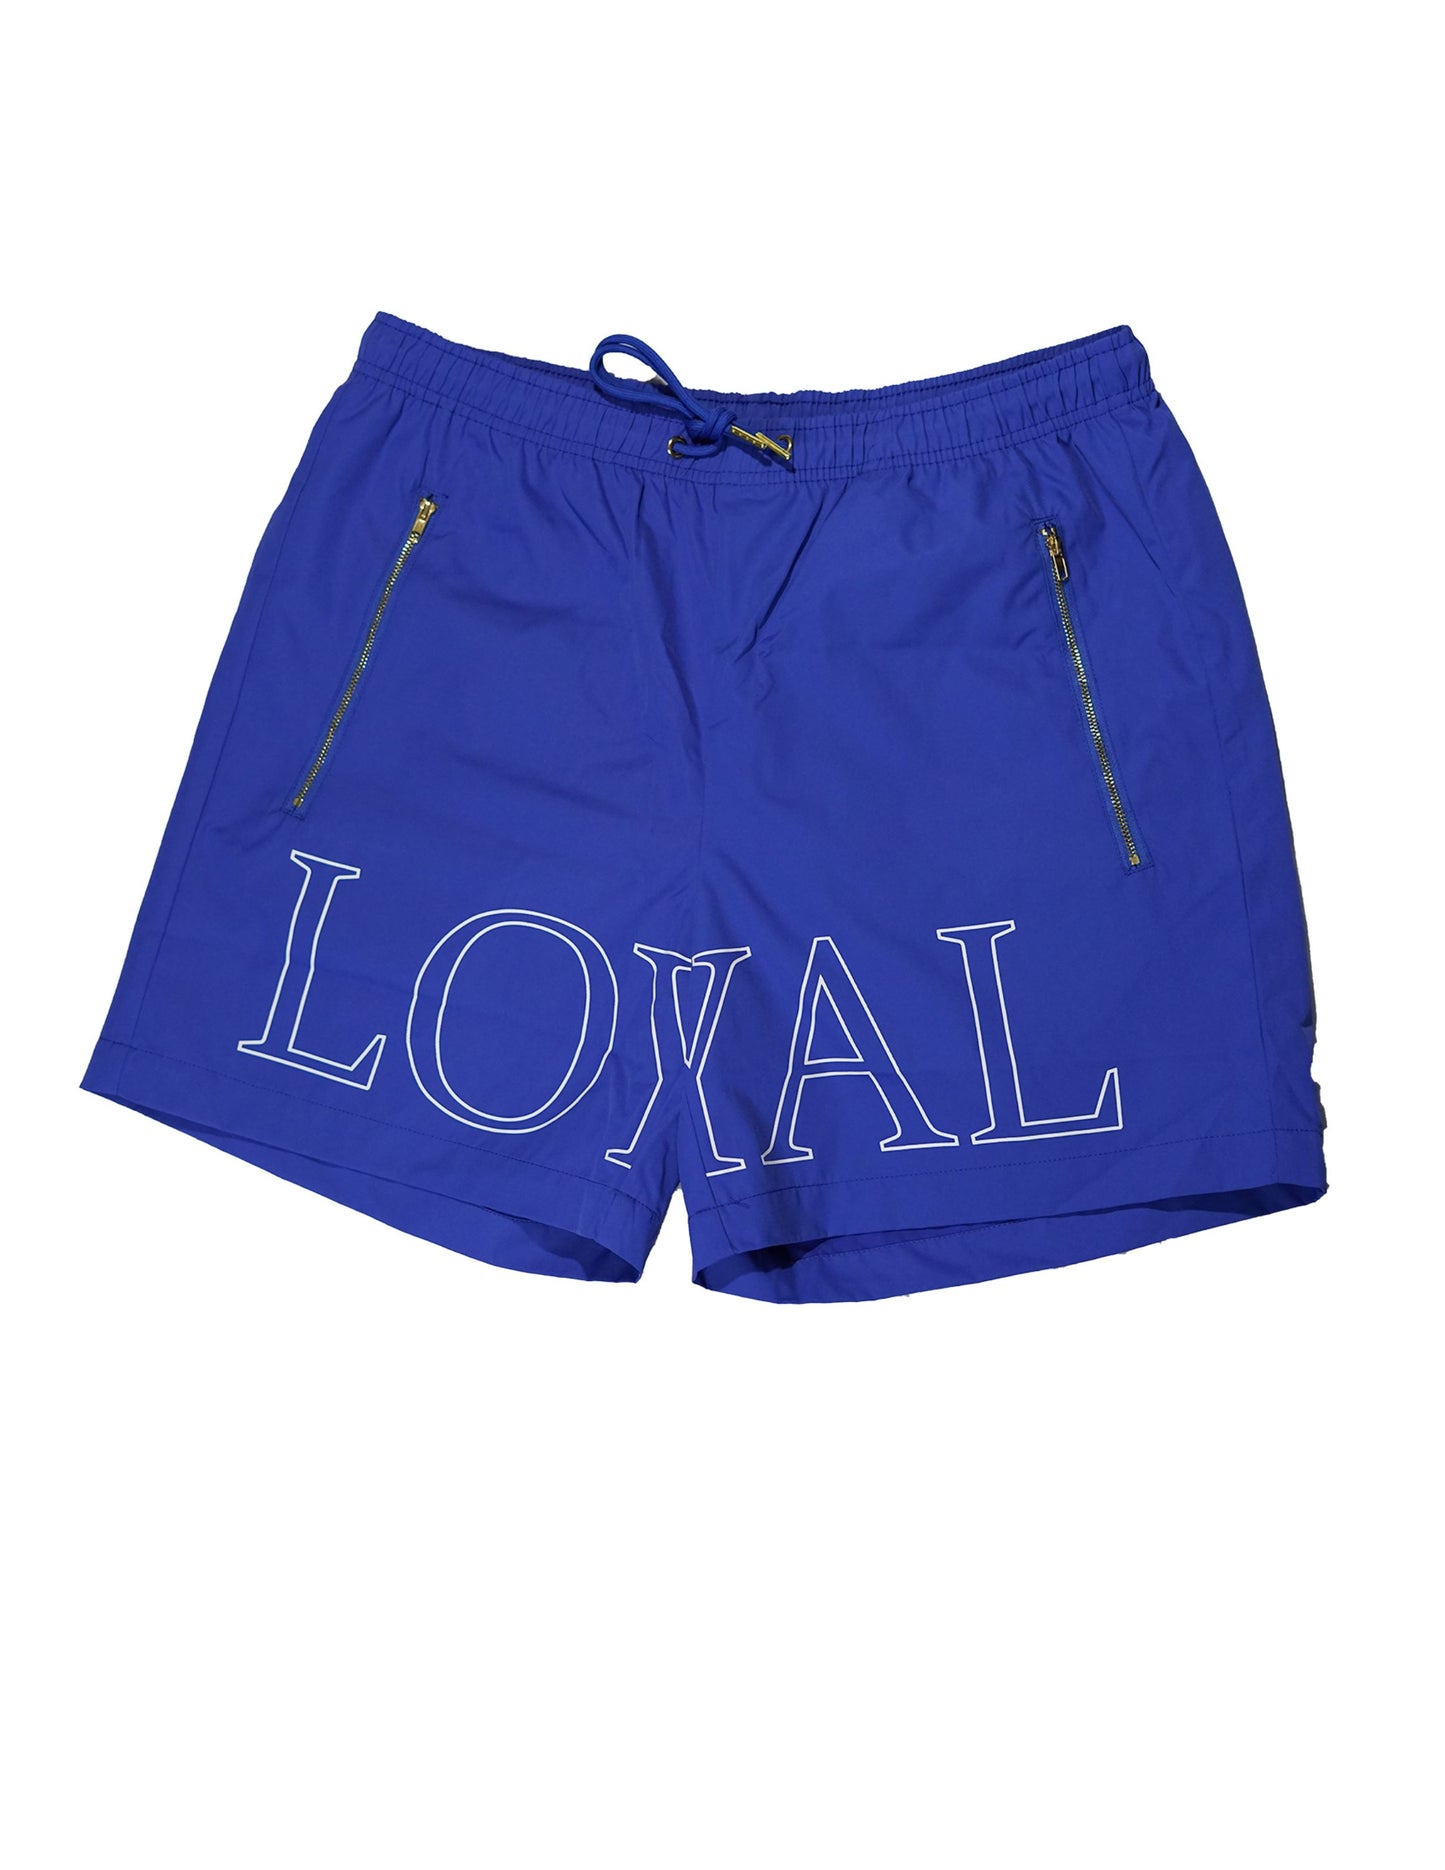 Loyal Shorts Shorts Forever Loyal Apparel 